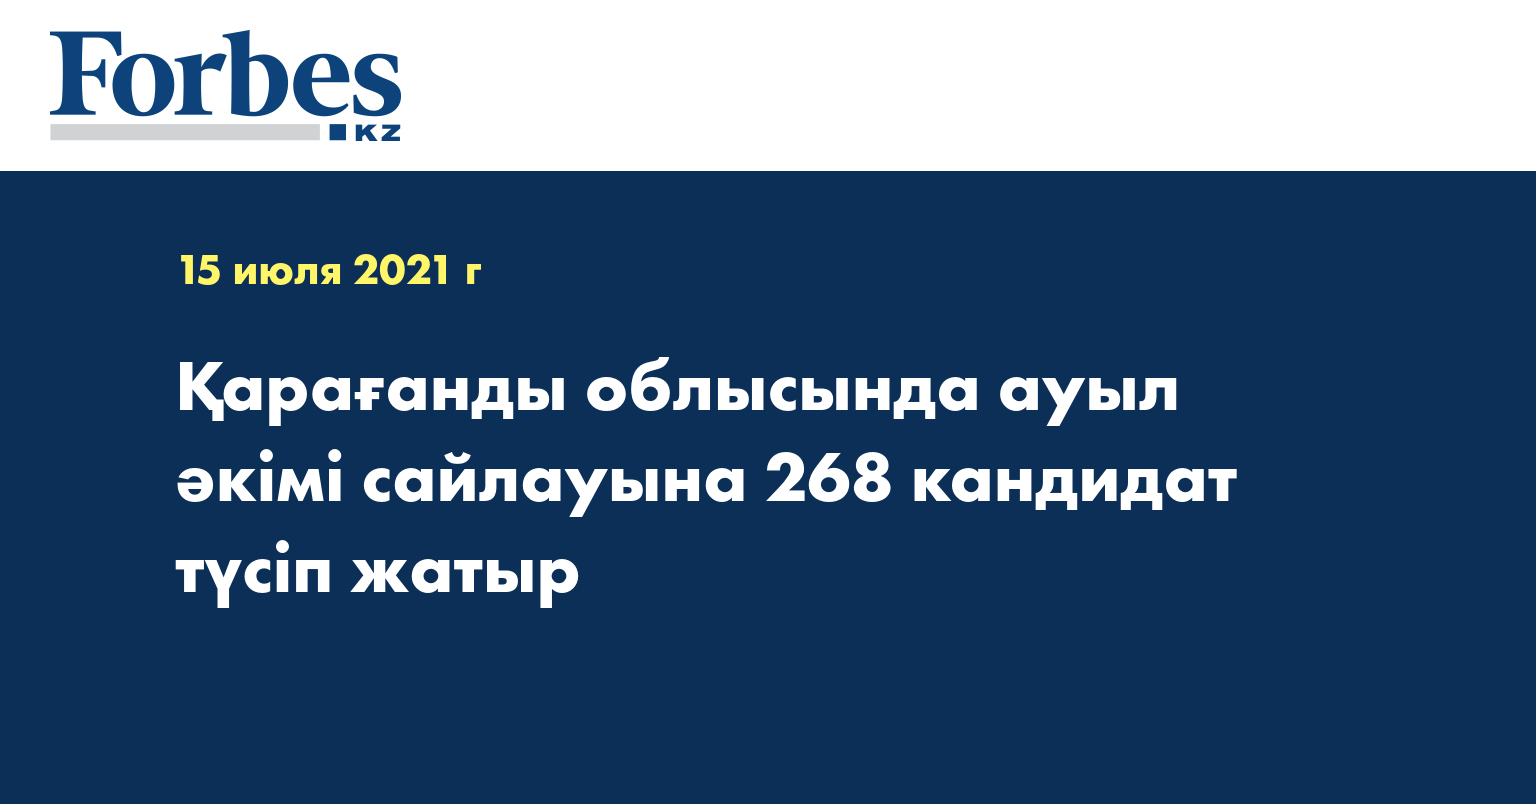 Қарағанды облысында ауыл әкімі сайлауына 268 кандидат түсіп жатыр